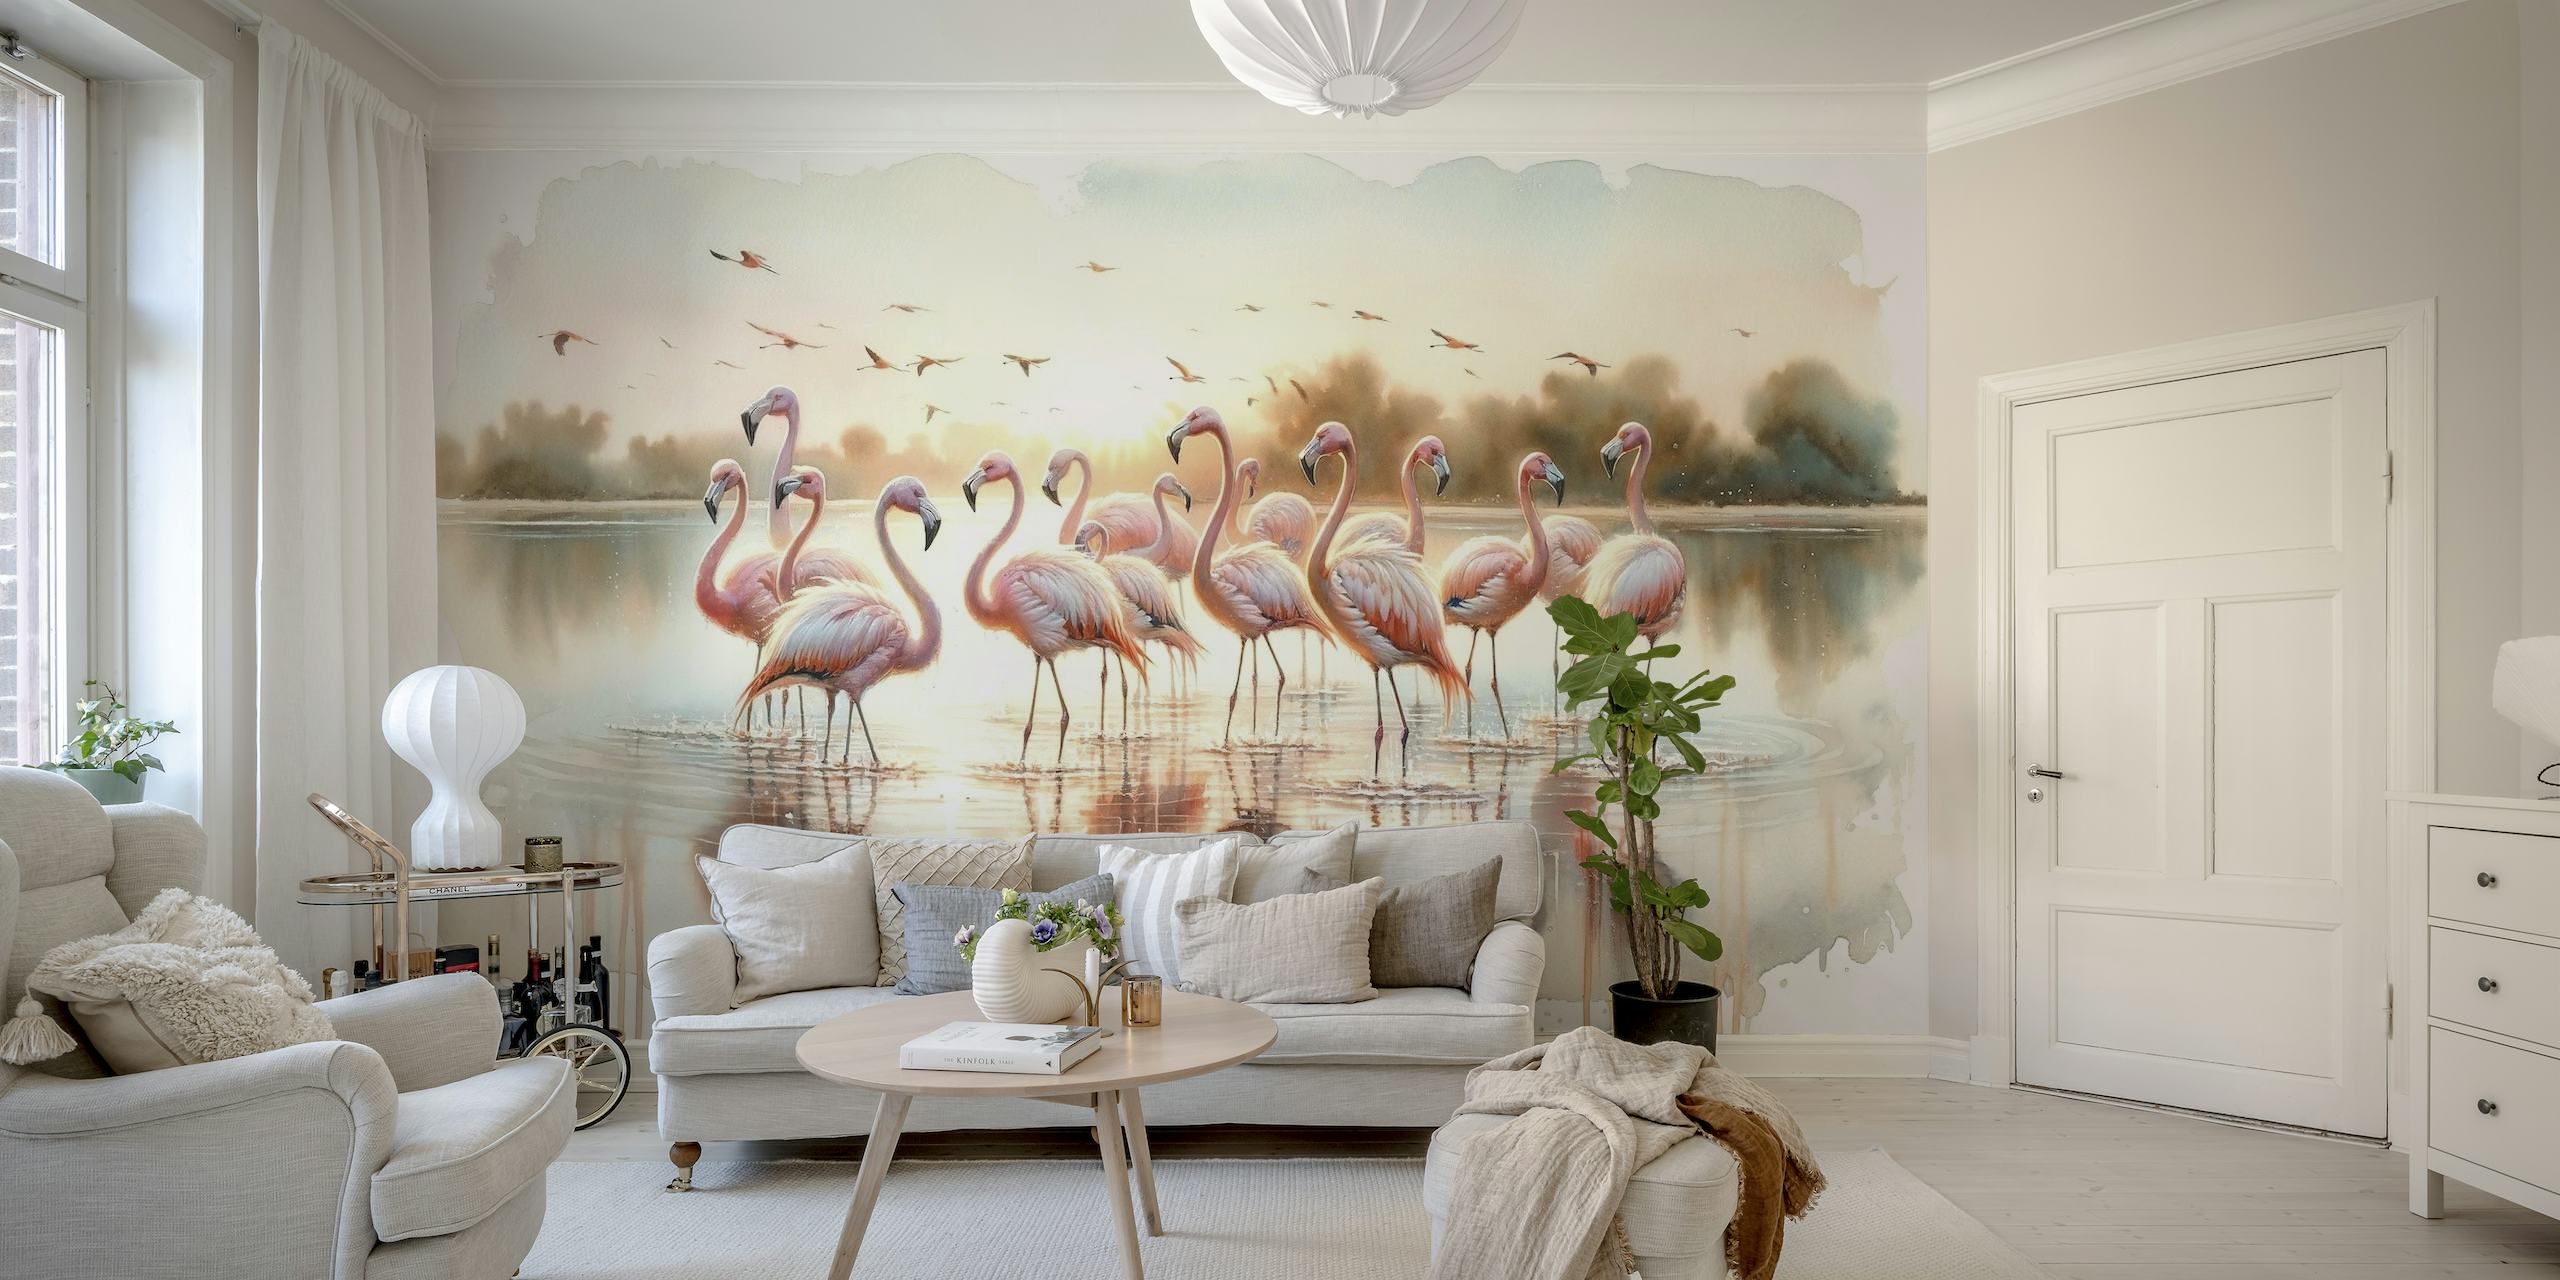 Een serene groep flamingo's bij zonsopgang met waterreflecties in een muurschildering in aquarelstijl.